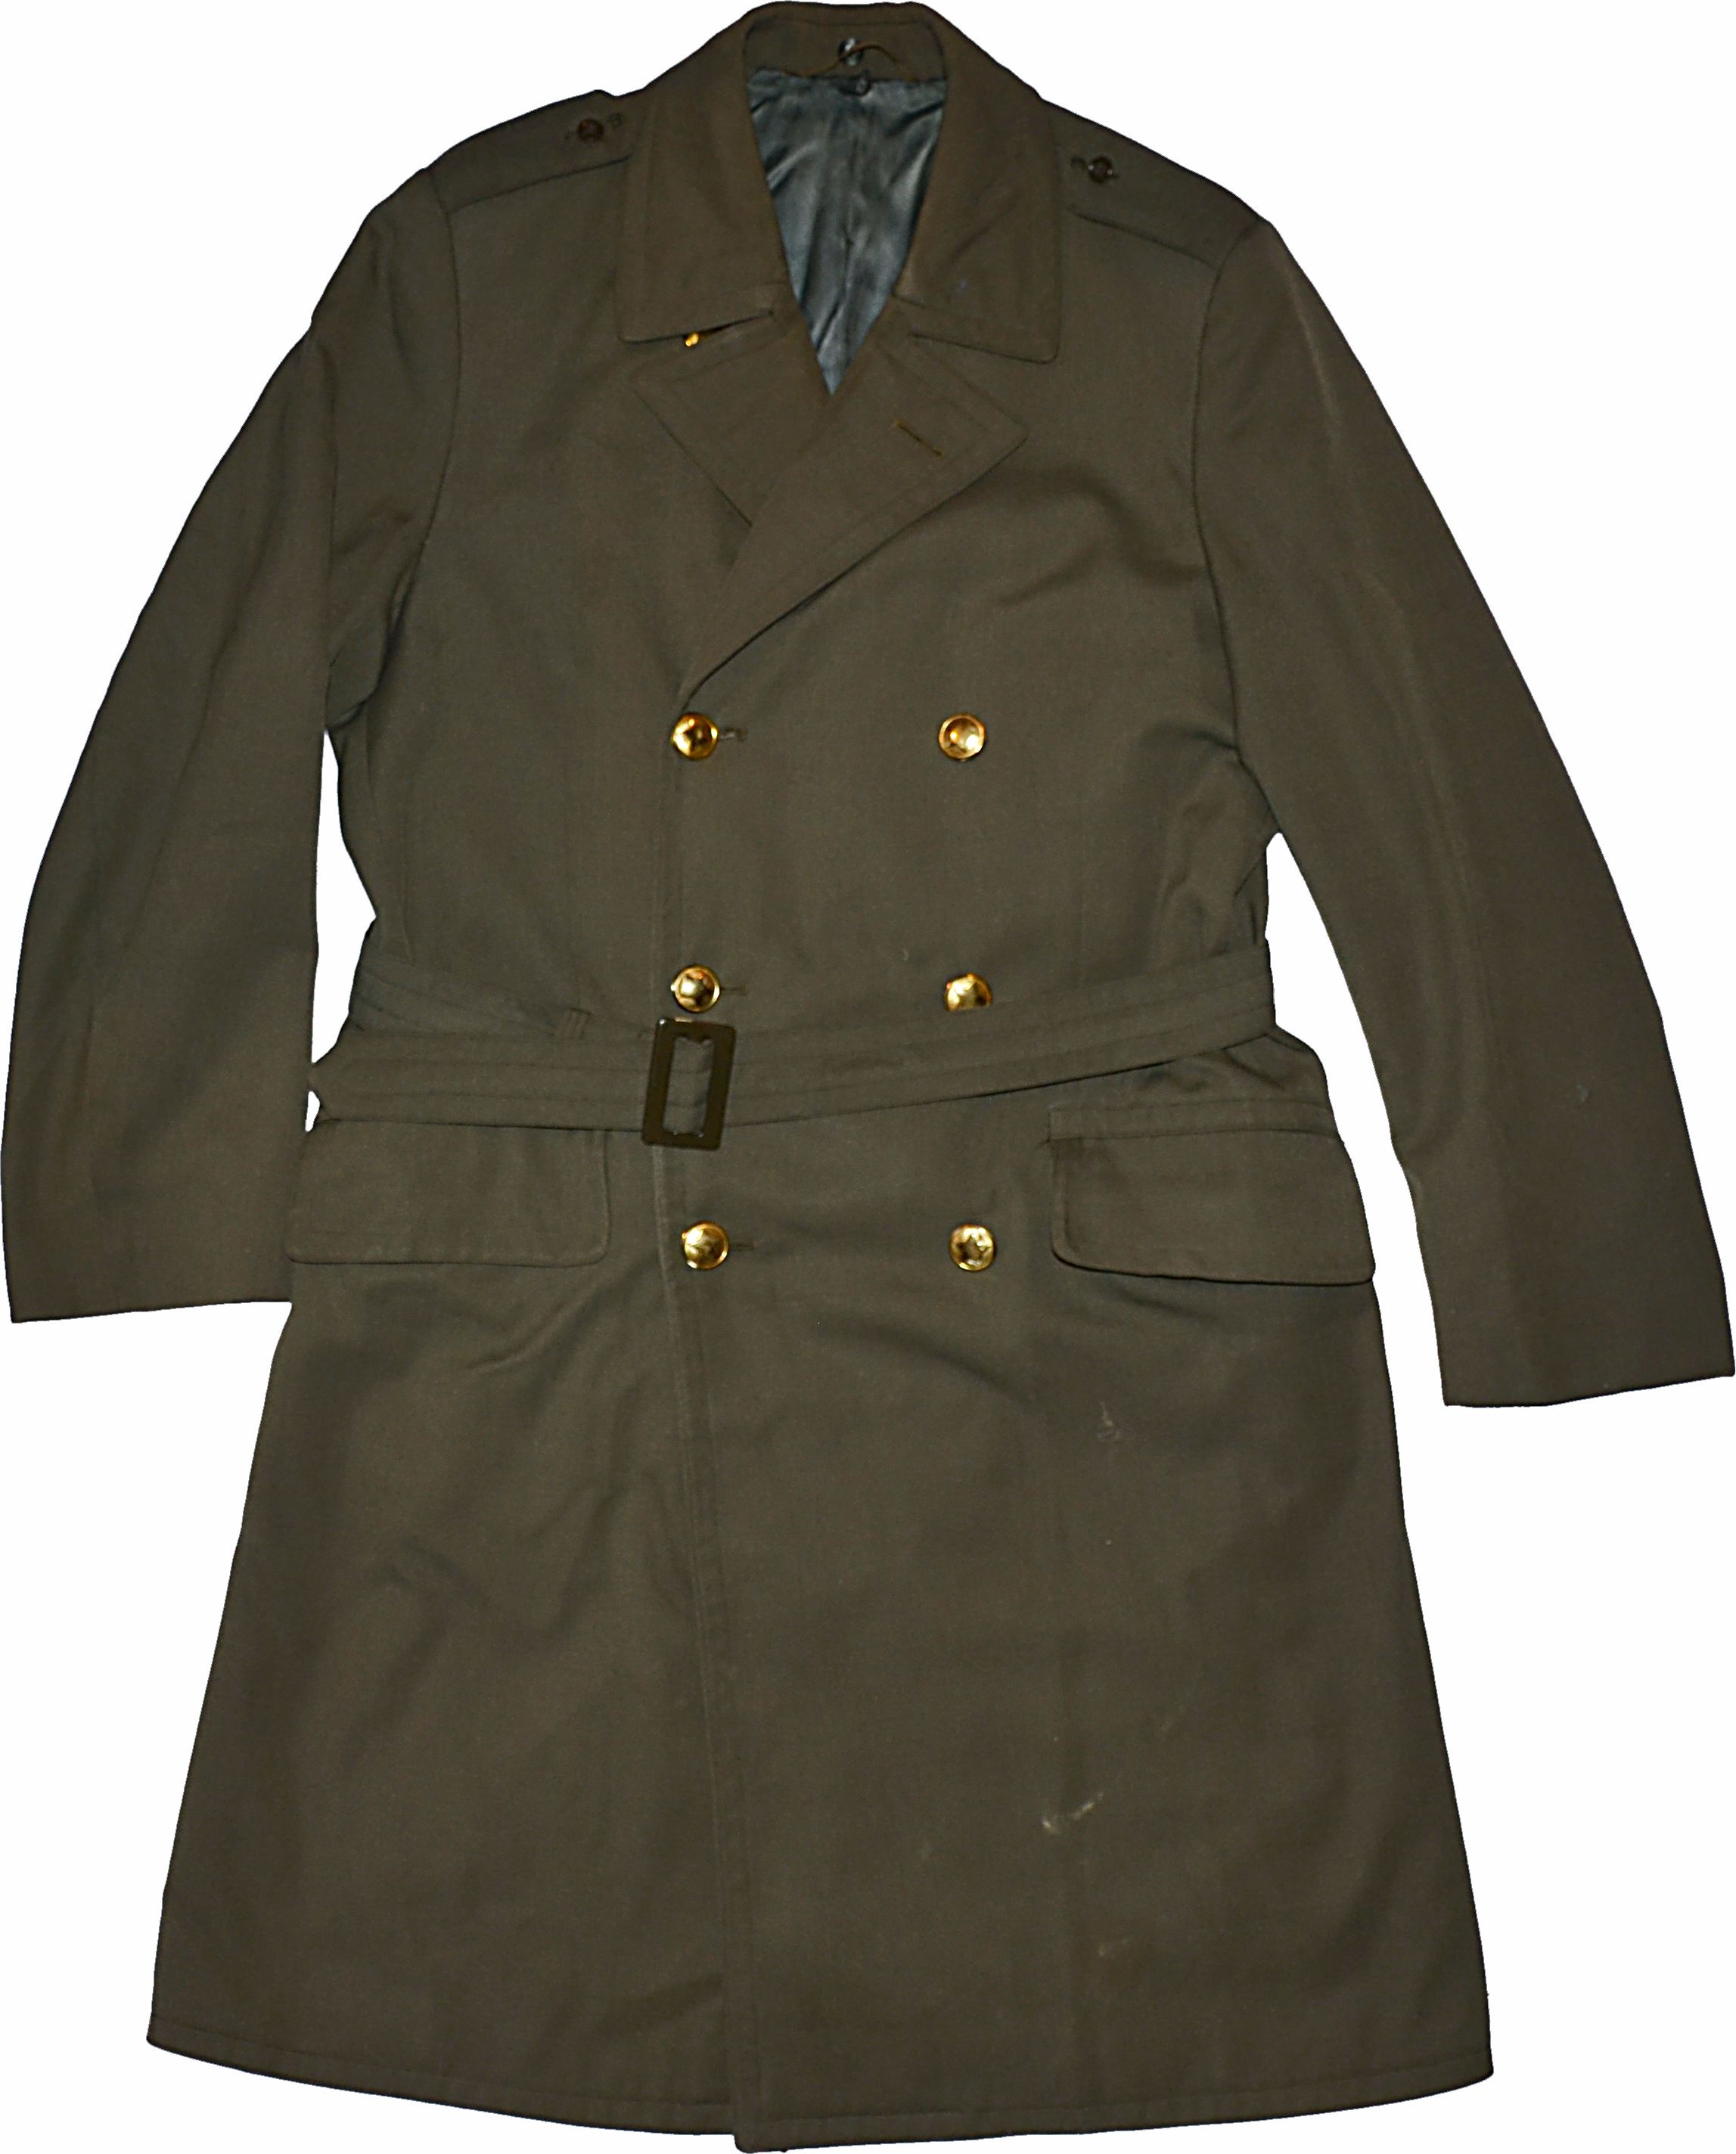 Kabát  zelený vycházkový , plášť ČSLA, AČR